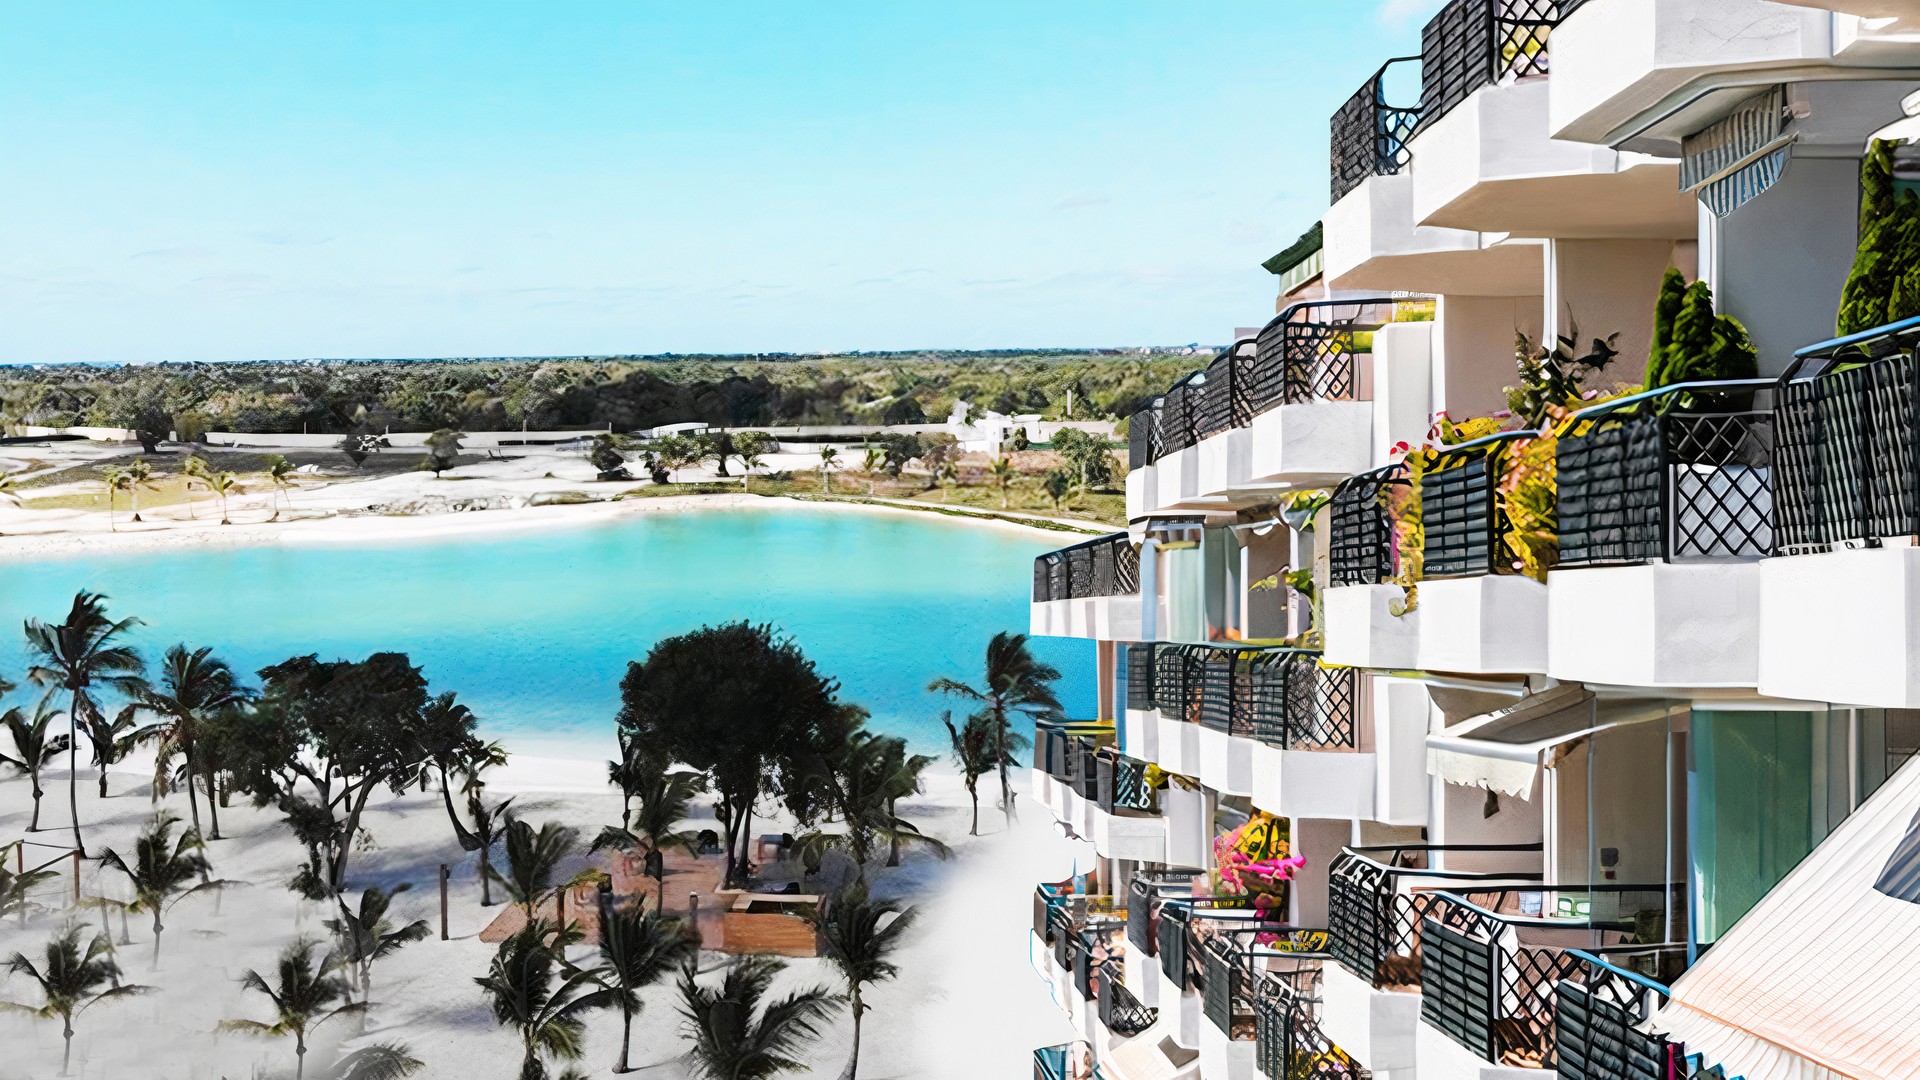 apartamentos - Venta de apartamentos de lujo en vista cana con vista a la playa 